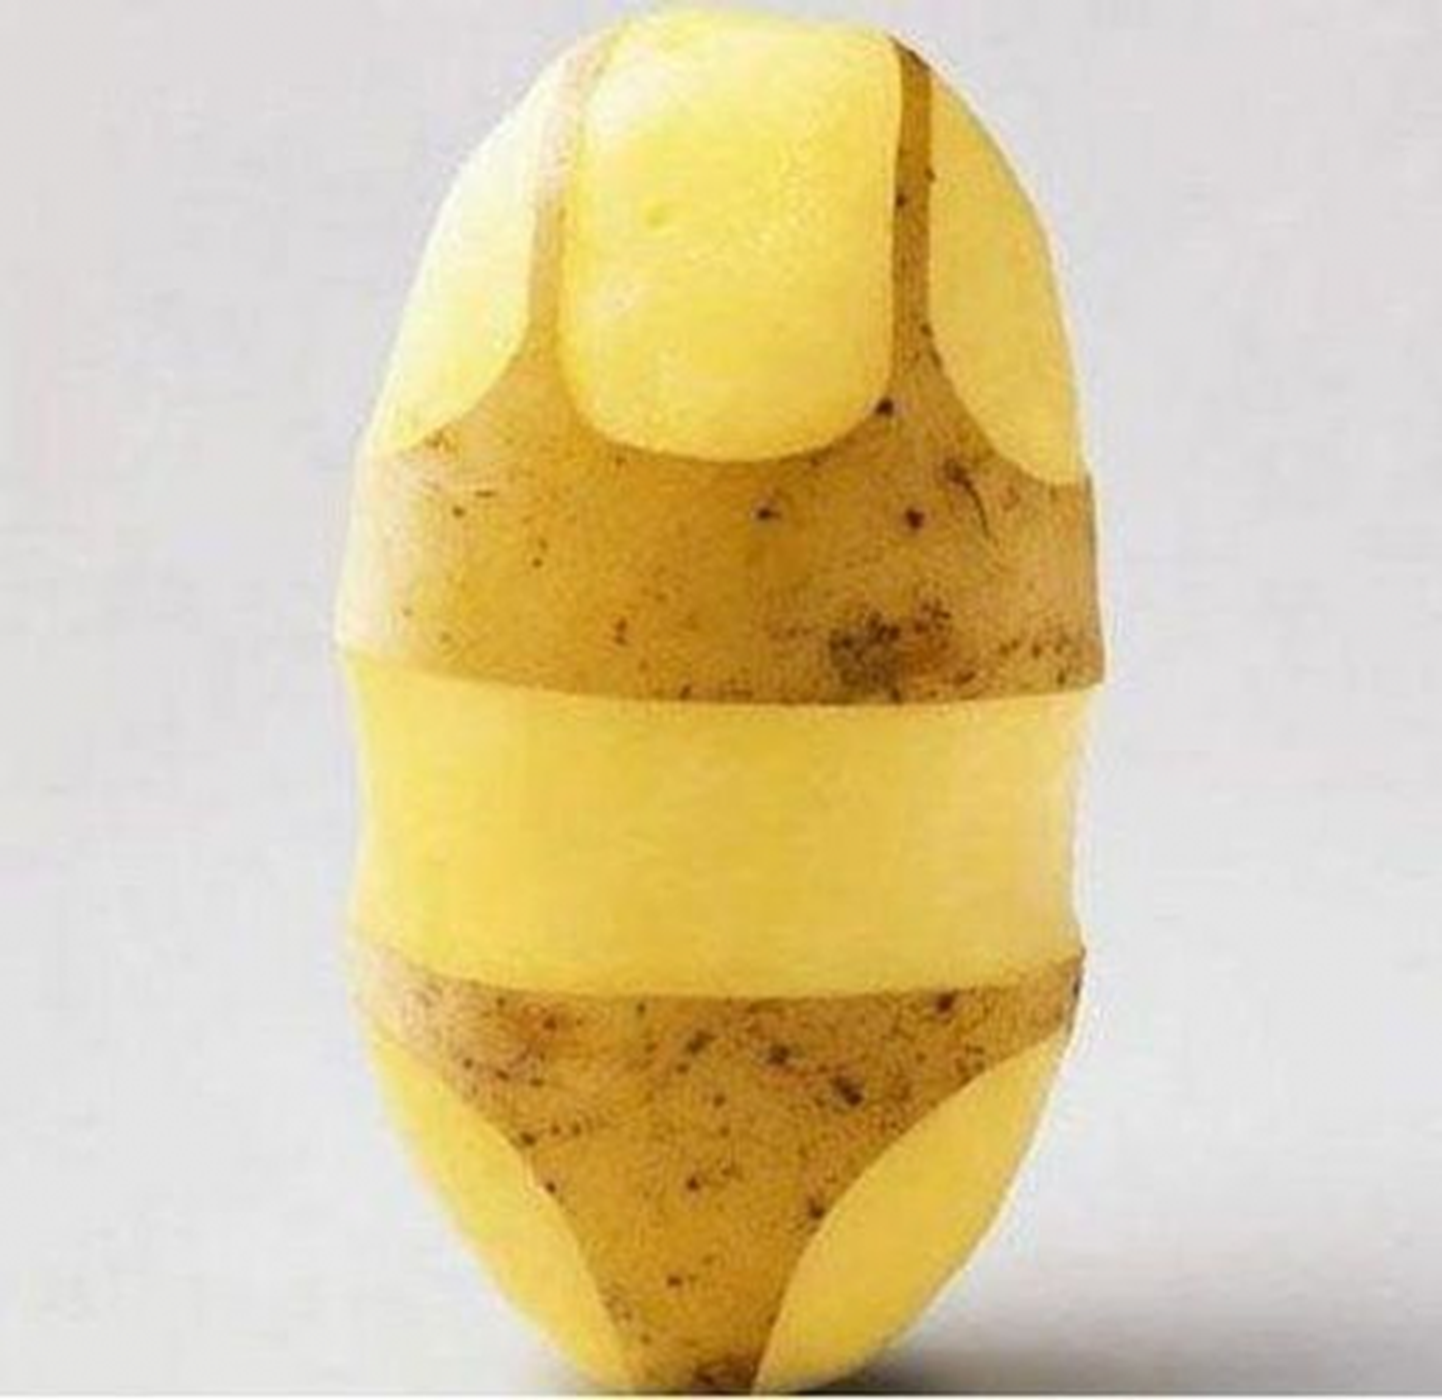 Картошка Potato. Снимок иллюстративный.